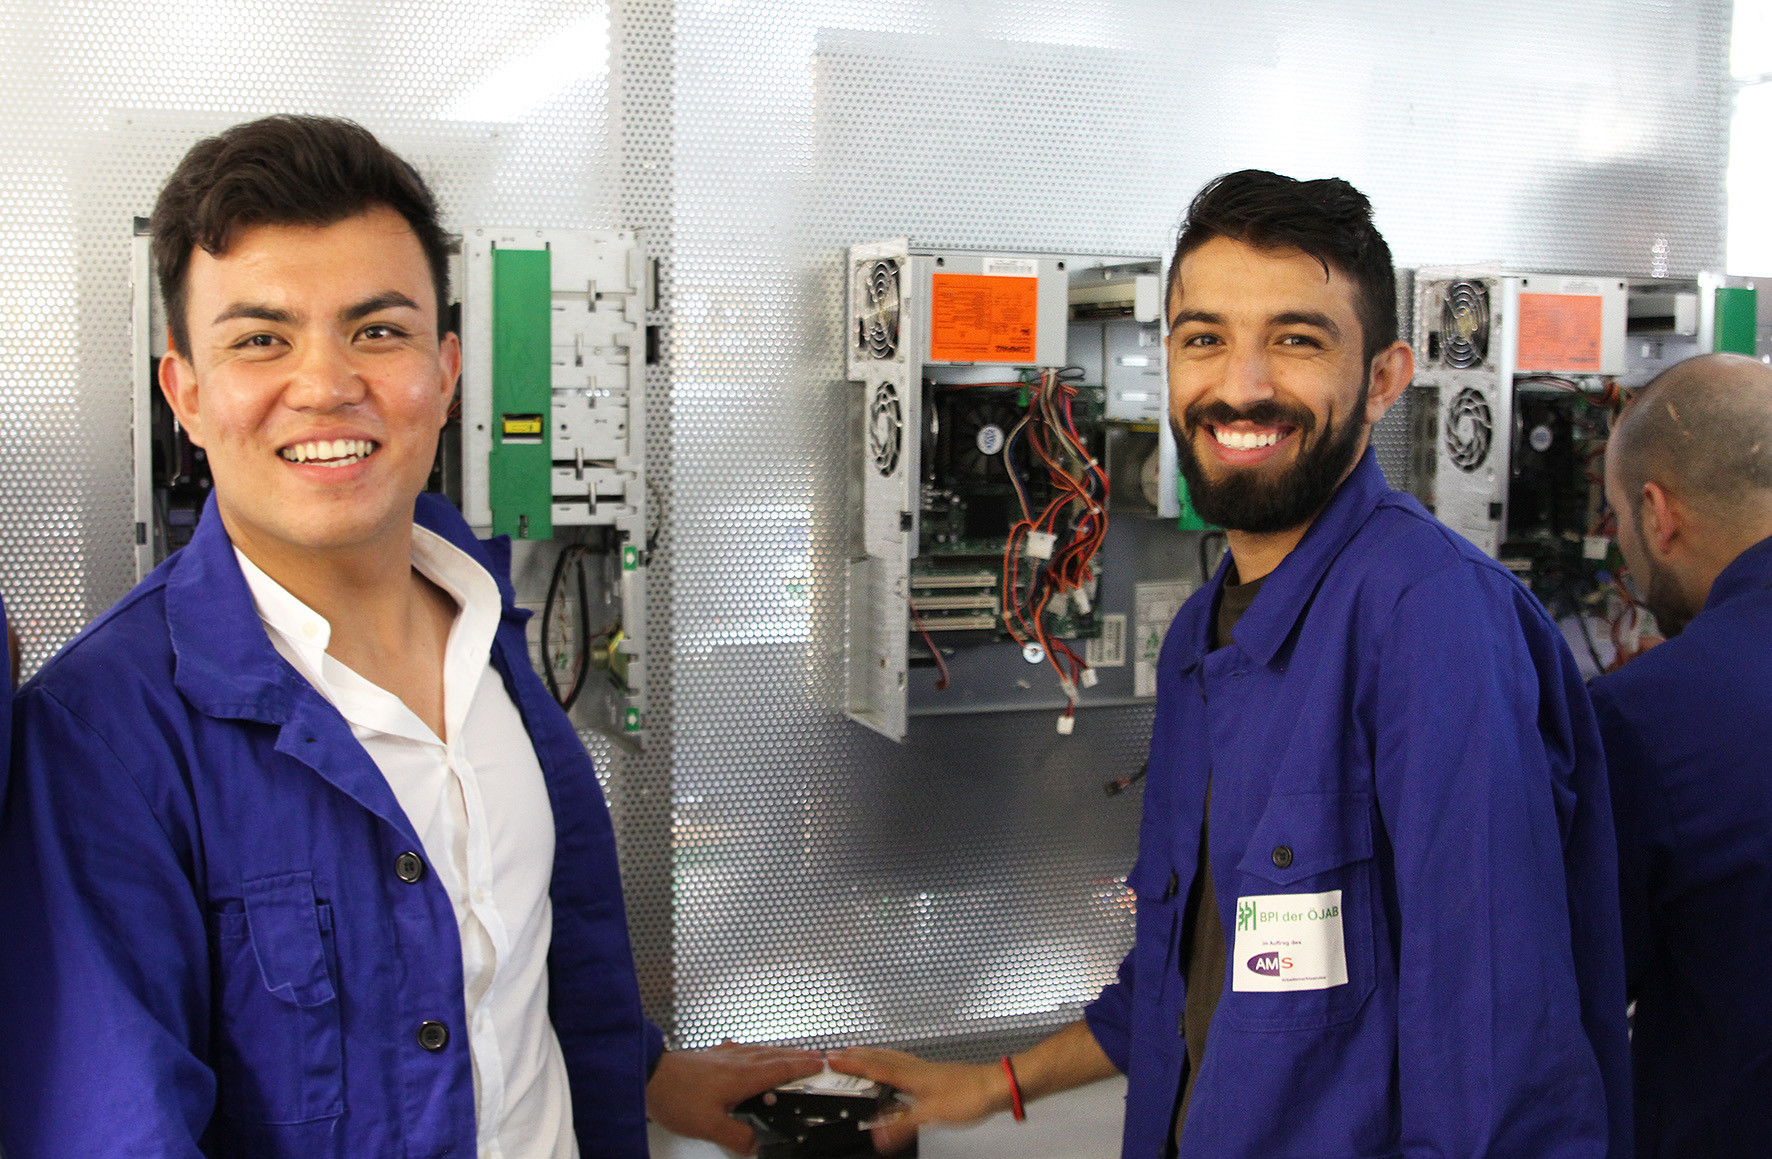 Zwei Teilnehmer einer Berufsausbildung vor elektrotechnischen Anlagen